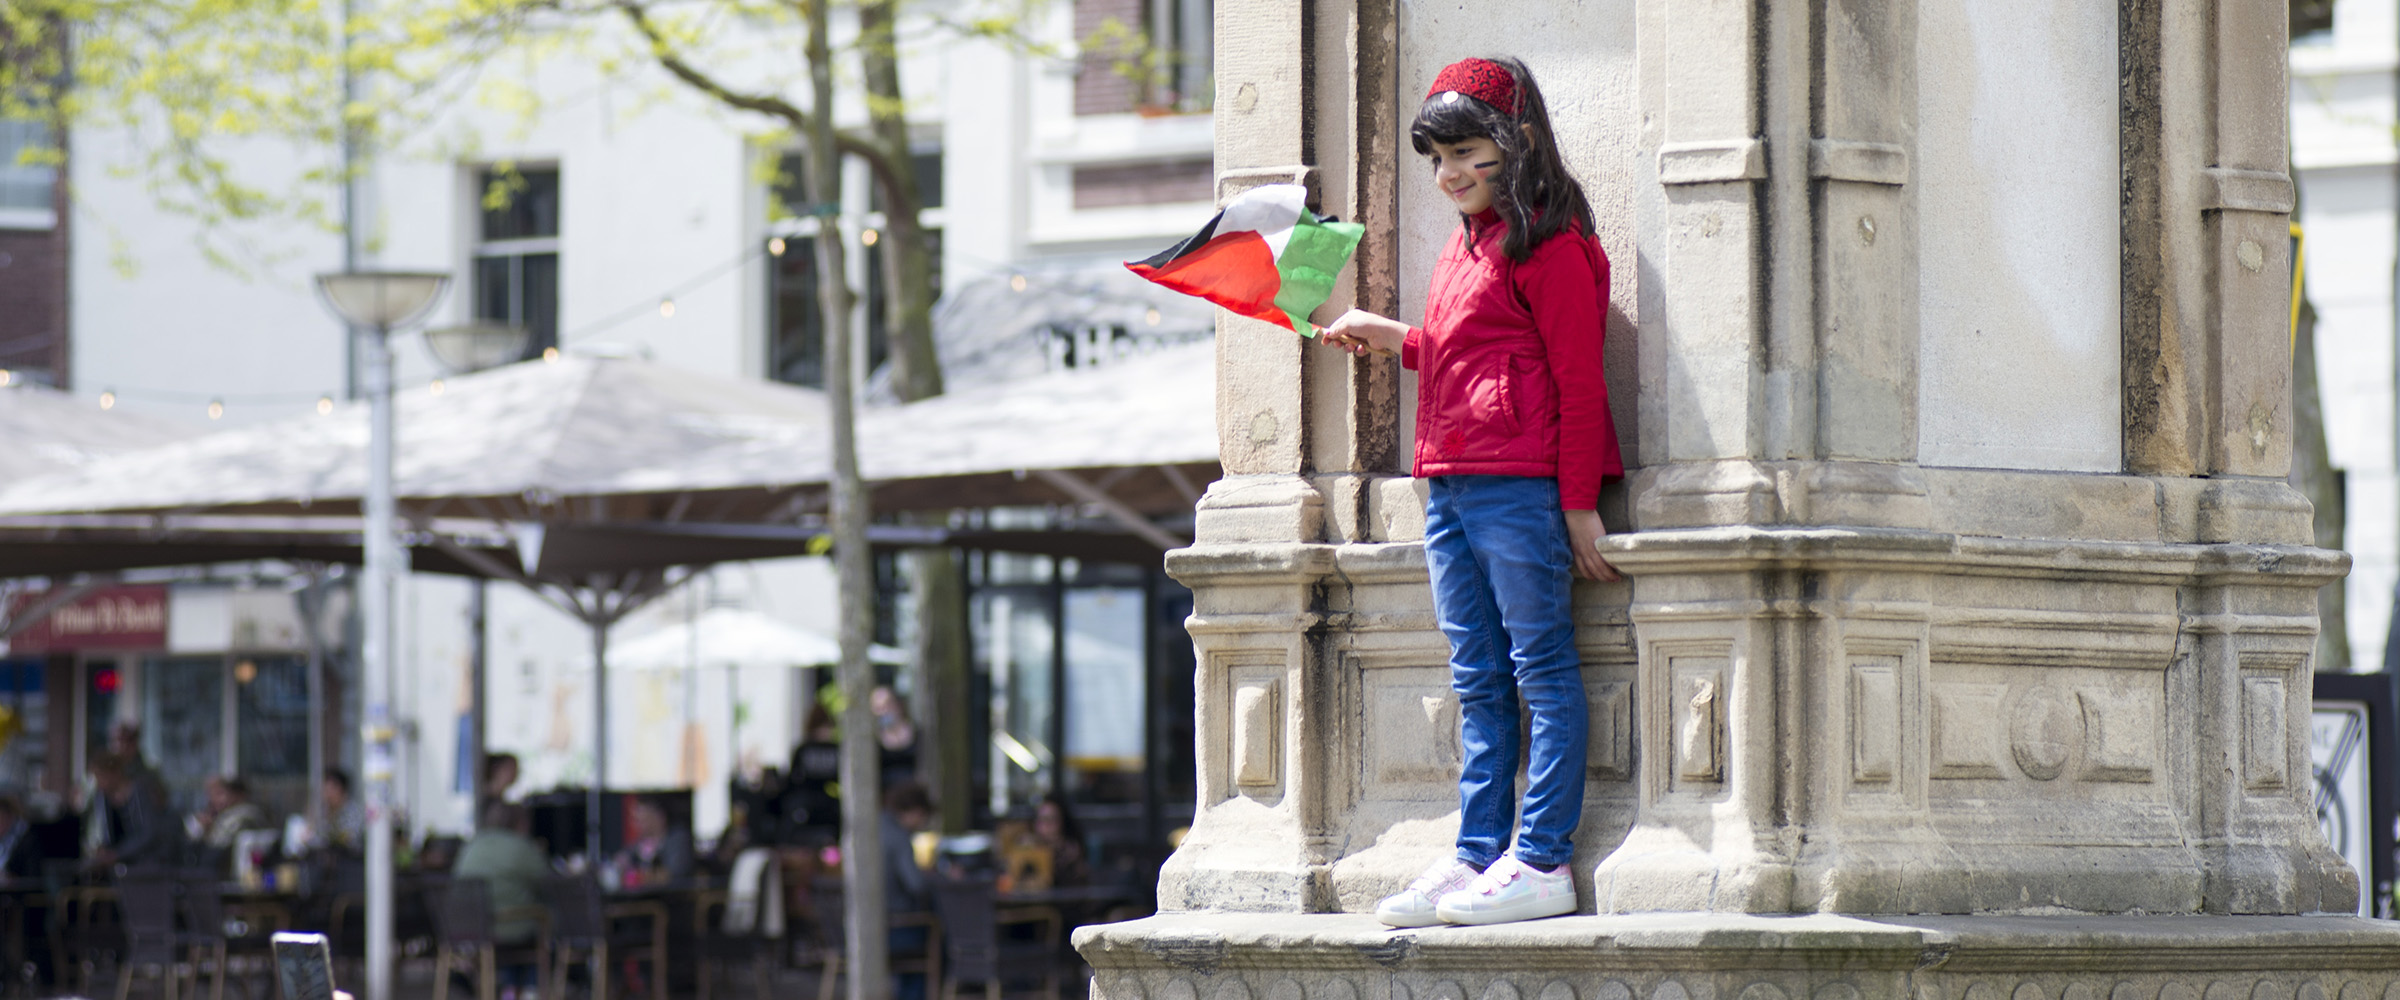 Palestina demonstratie in Nijmegen